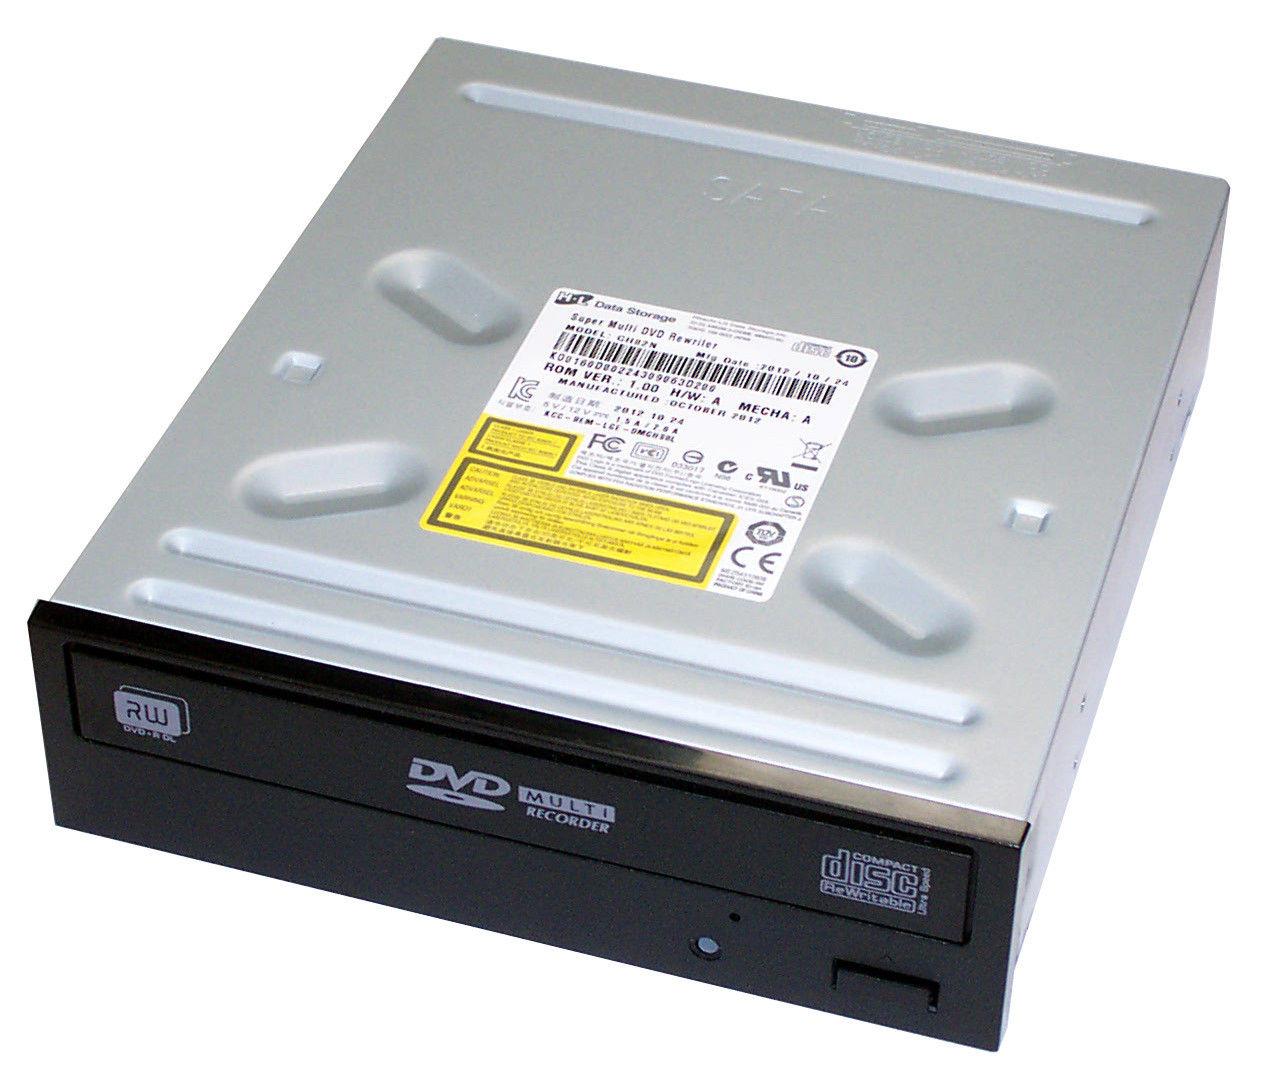 Ổ đĩa quang DVD RW dùng cho máy tính bàn, ổ đĩa DVD hỗ trợ đọc, ghi đĩa dvd, đĩa cd tốc độ cao không kén đĩa